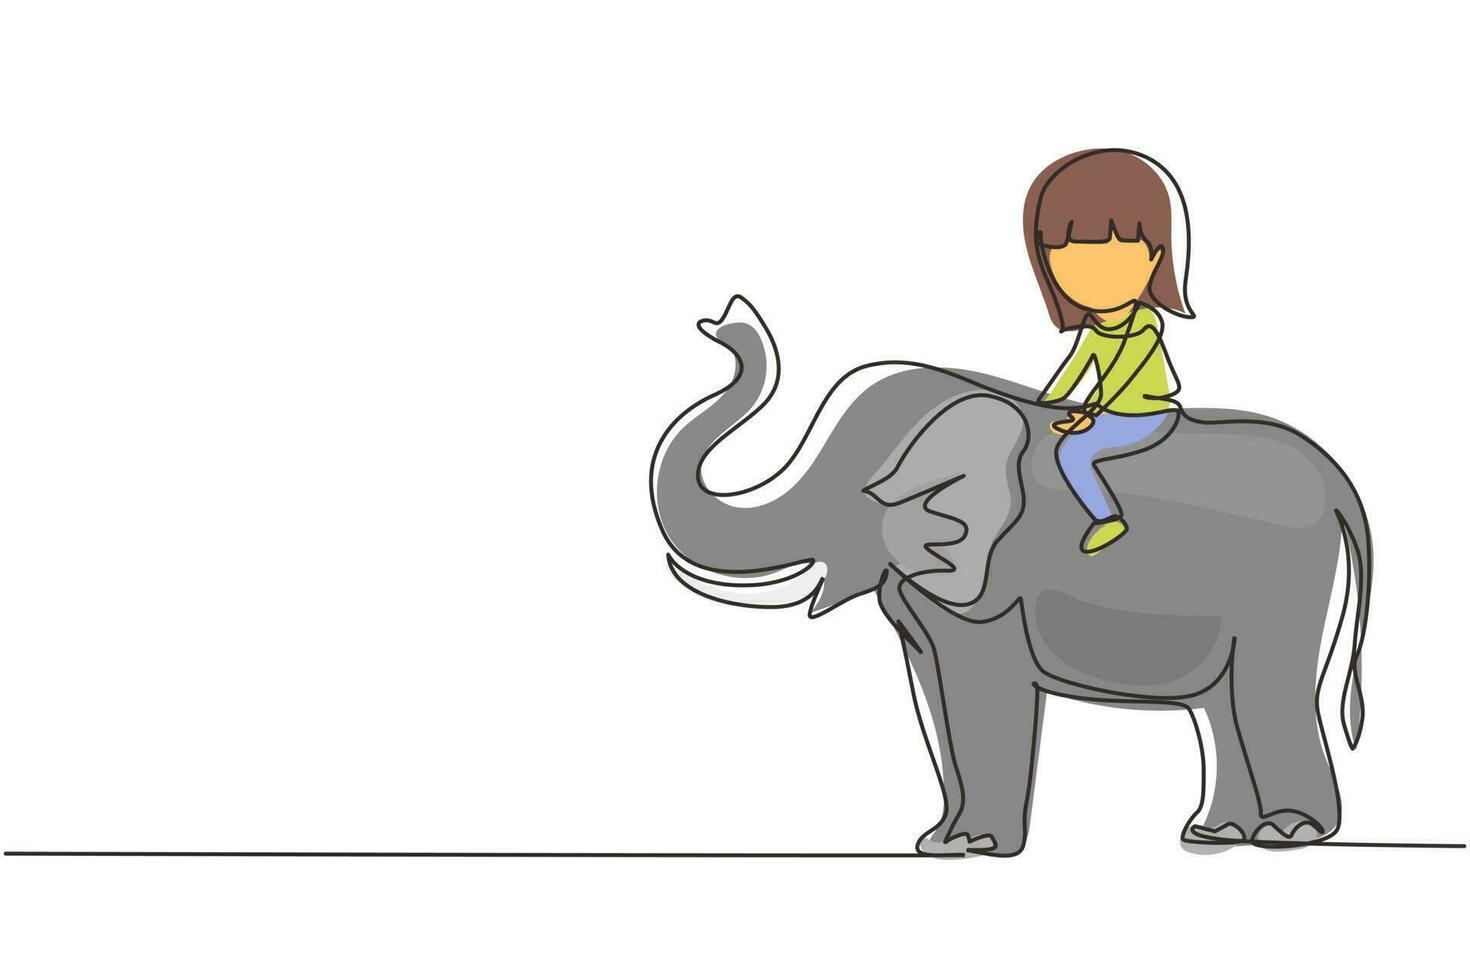 único desenho de uma linha garotinha feliz andando de elefante. criança sentada nas costas do elefante e viajando. crianças aprendendo a andar de elefante. ilustração em vetor gráfico de desenho de linha contínua moderna